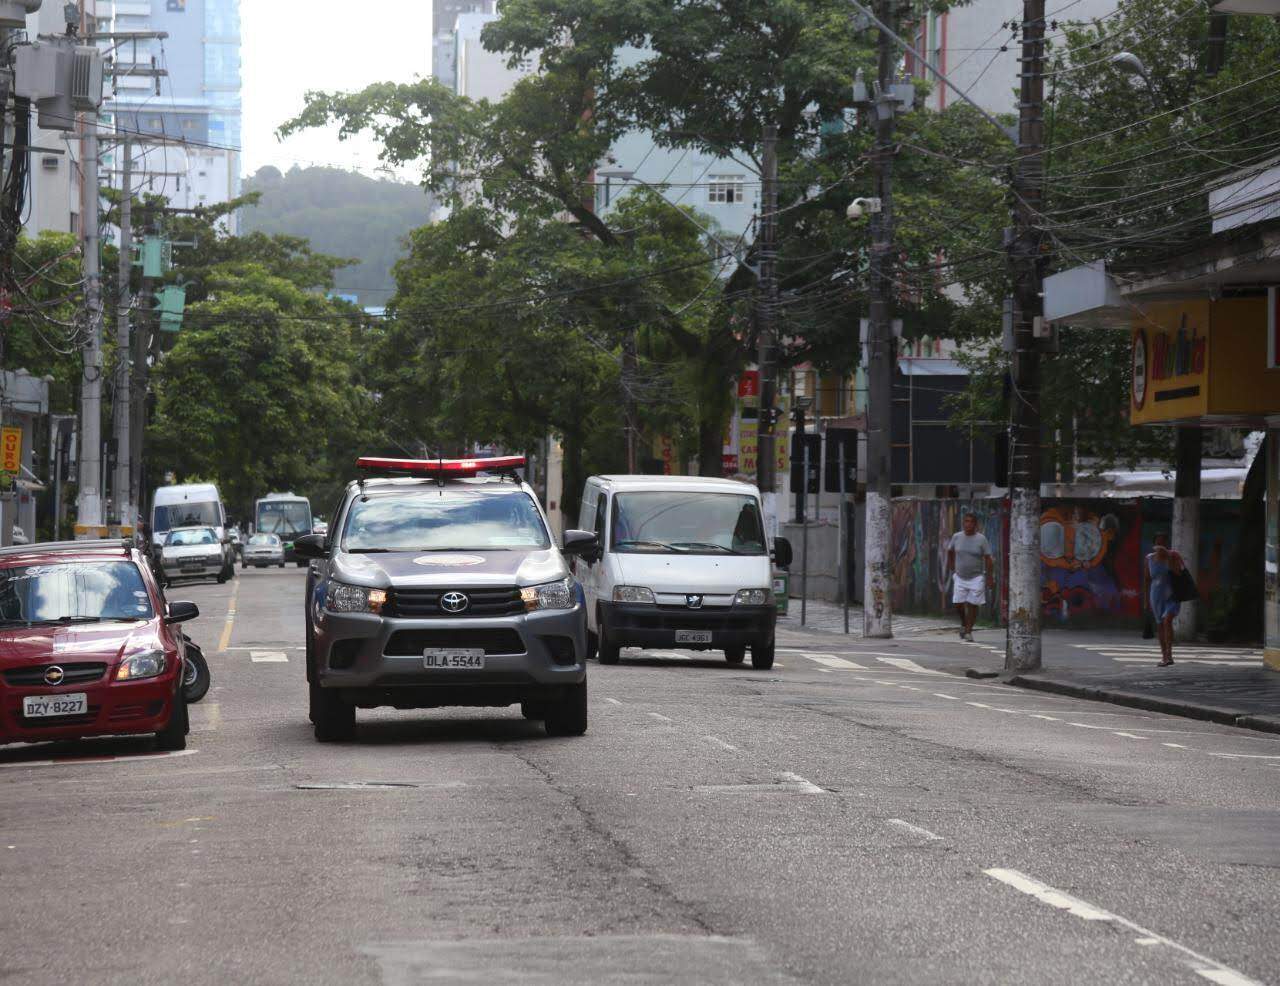 Guarda Municipal usa autofalantes nos veículos para transmitir mensagens